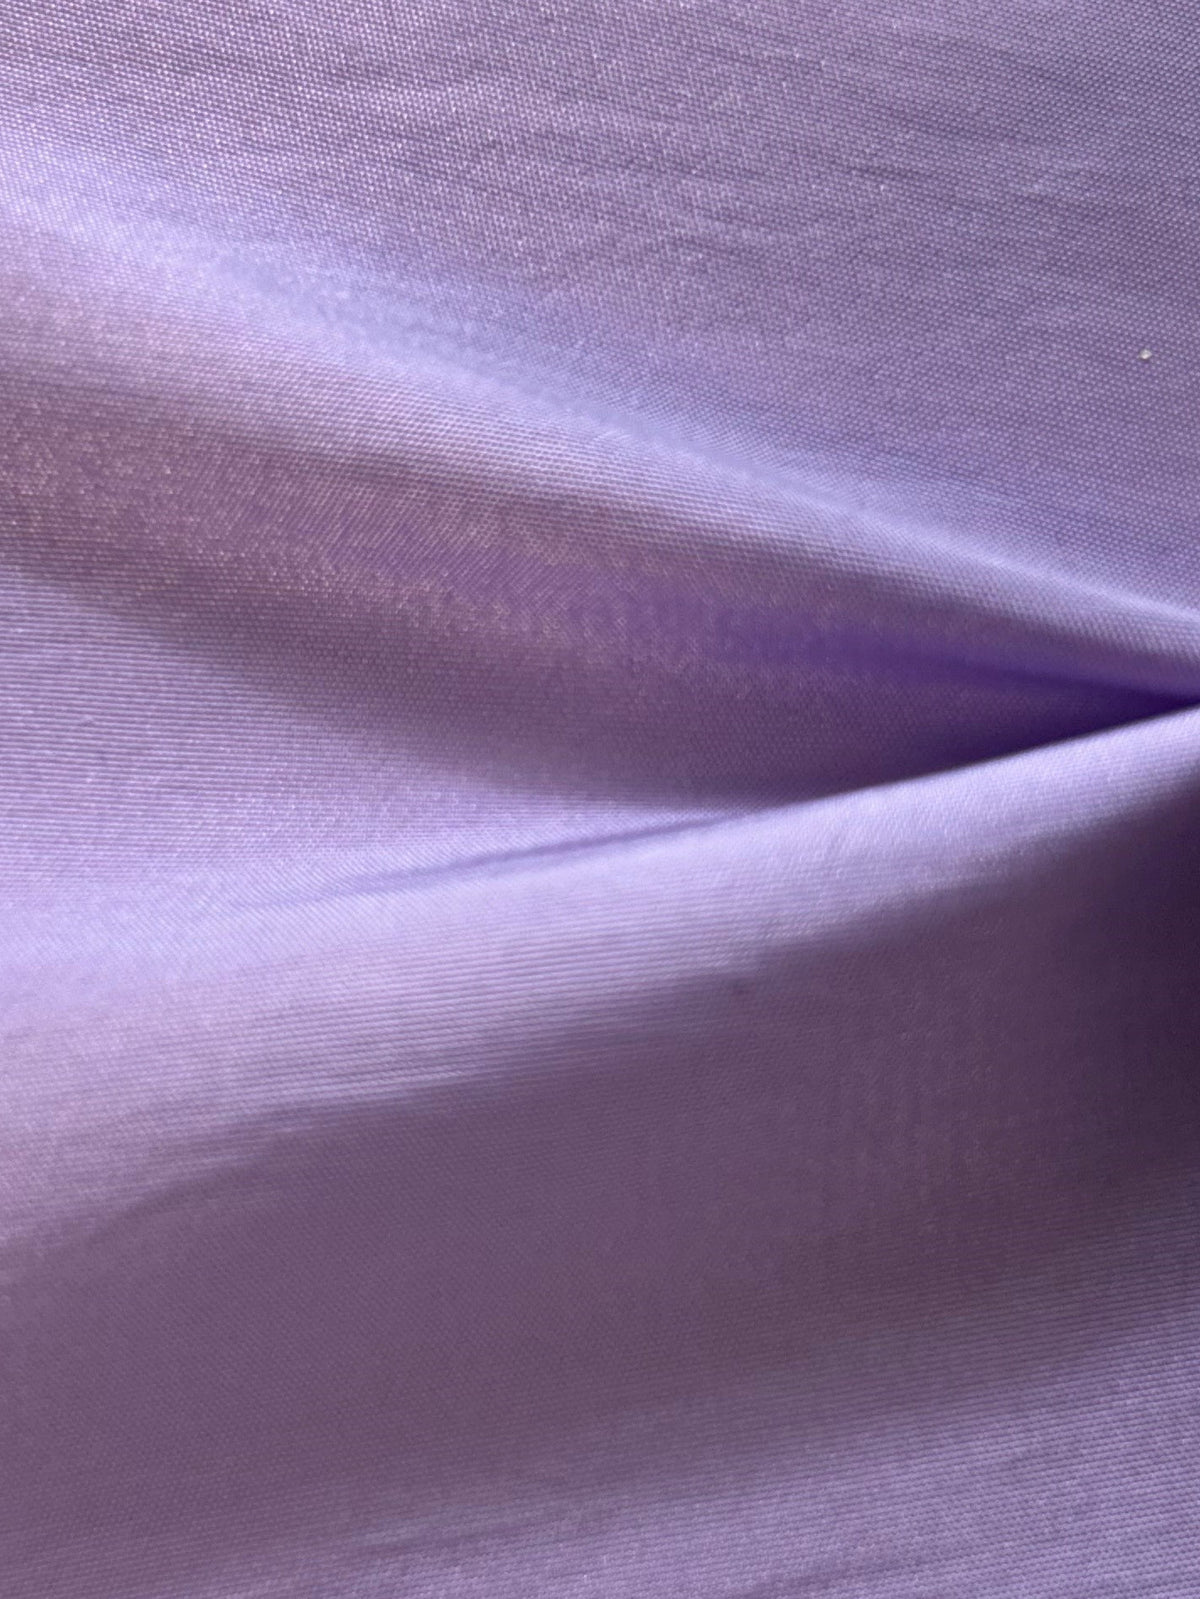 Lavender Taffeta - Radiance